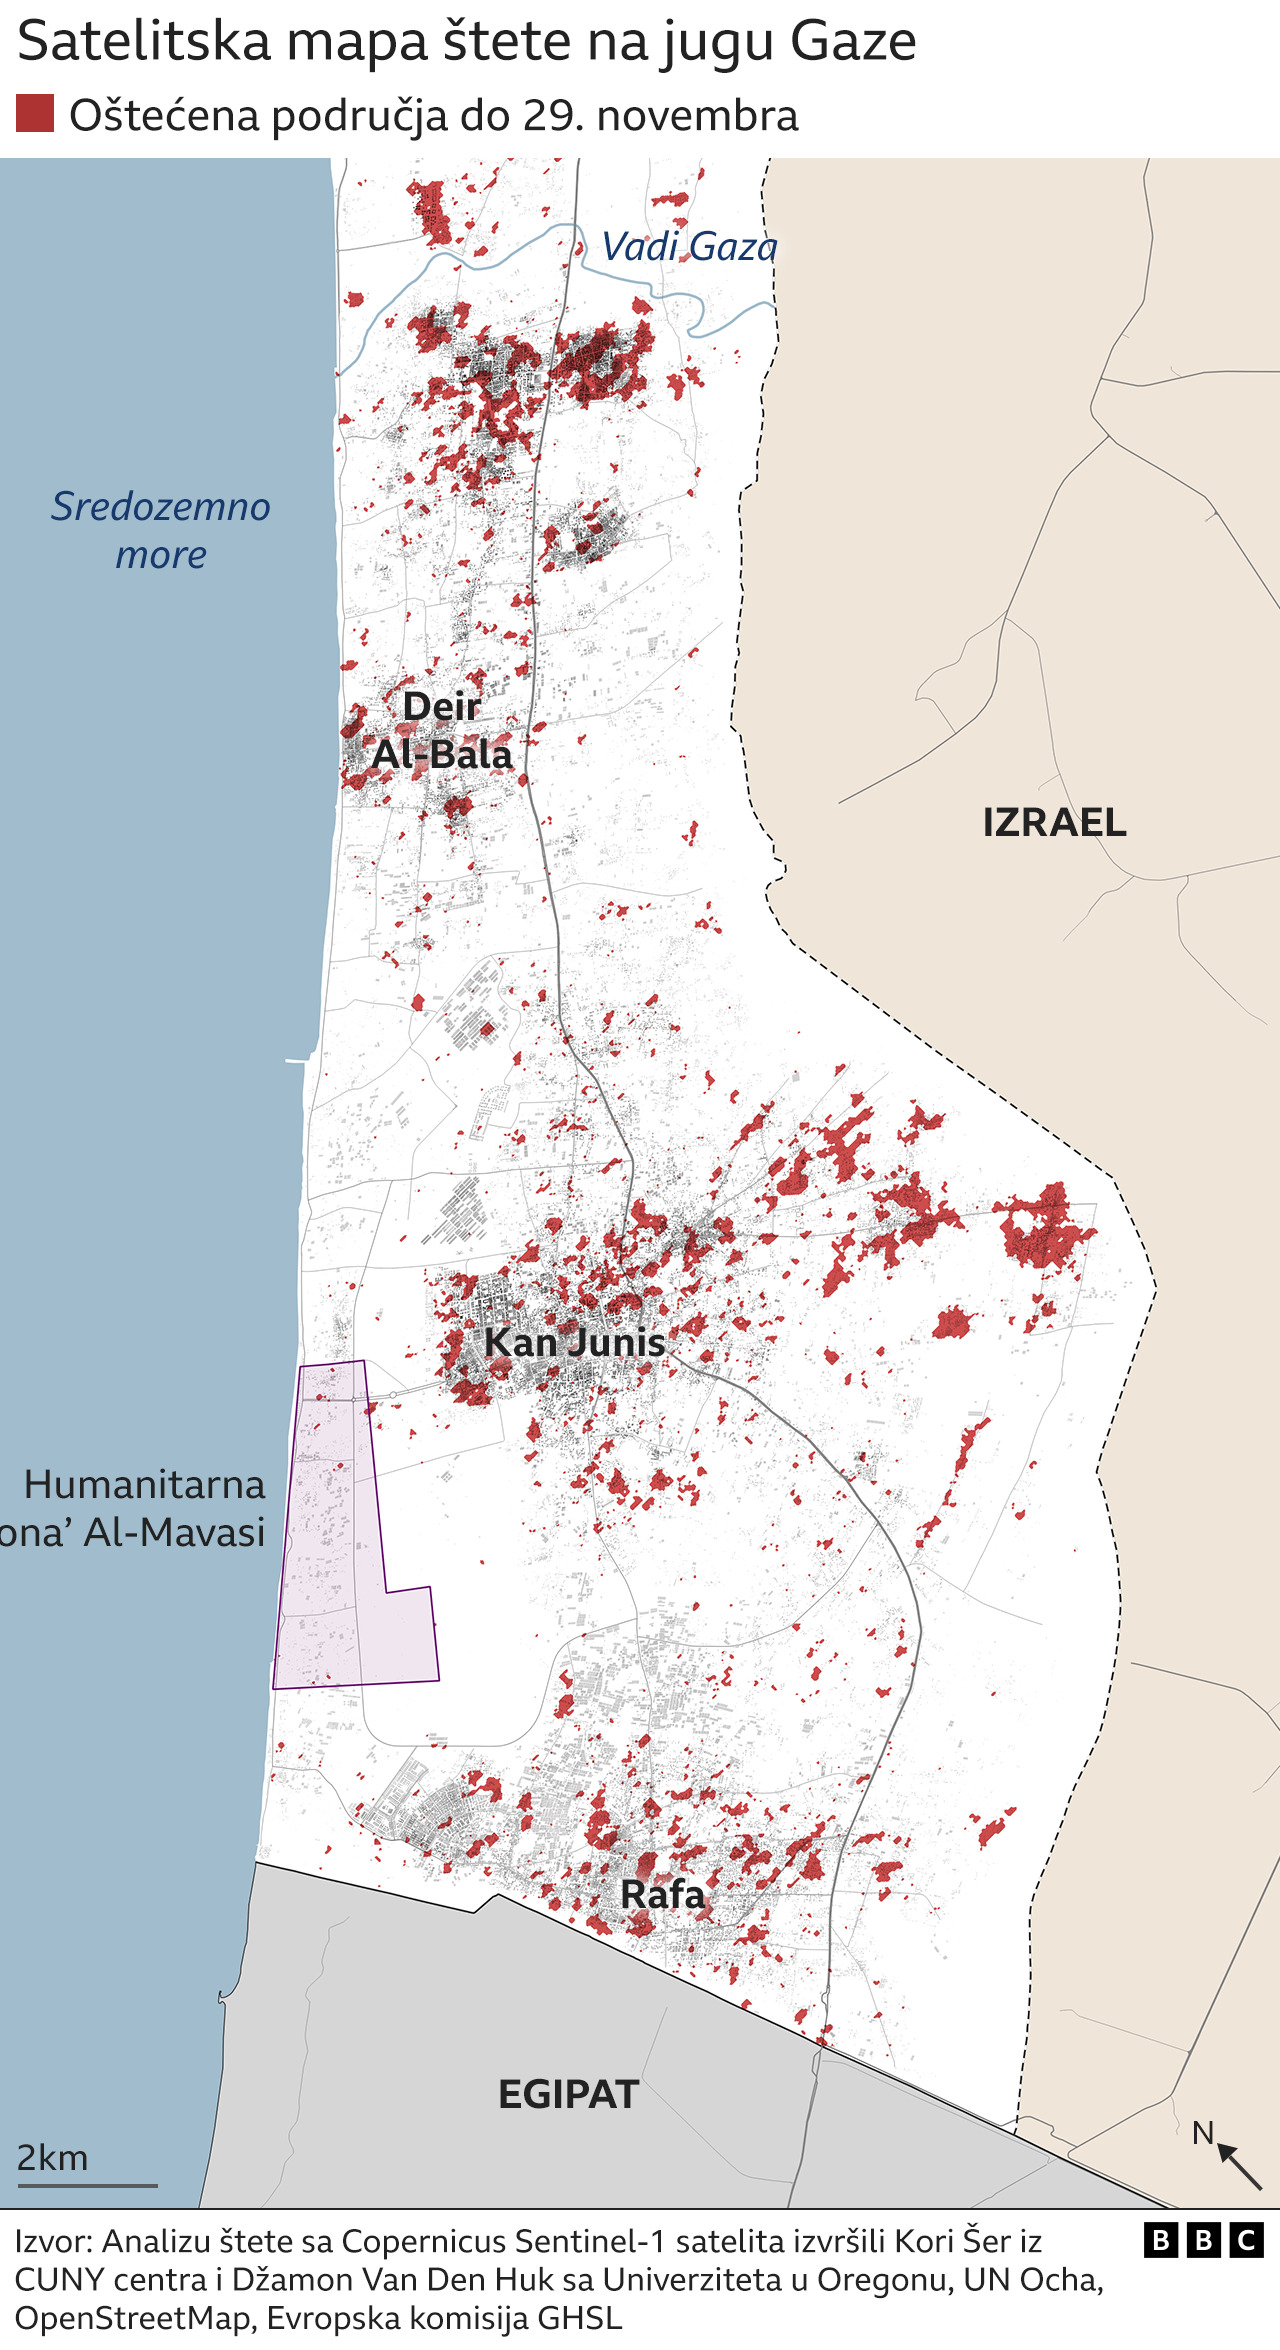 uništenja na jugu Gaze